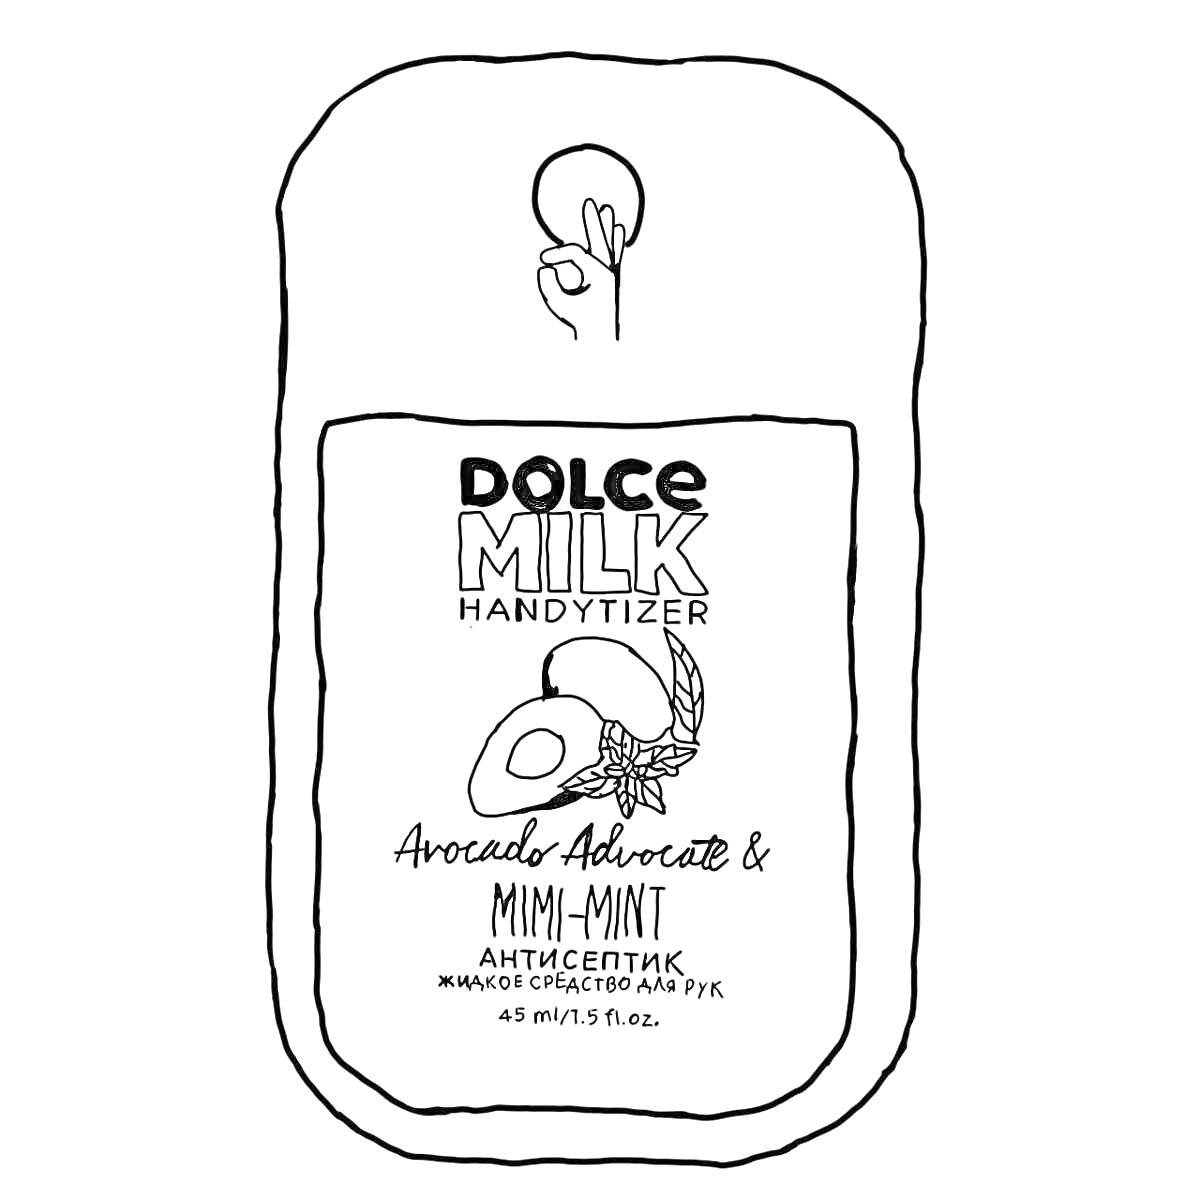 Dolce Milk Handytizer Avocado Advocate & Mimi-Mint Антисептик